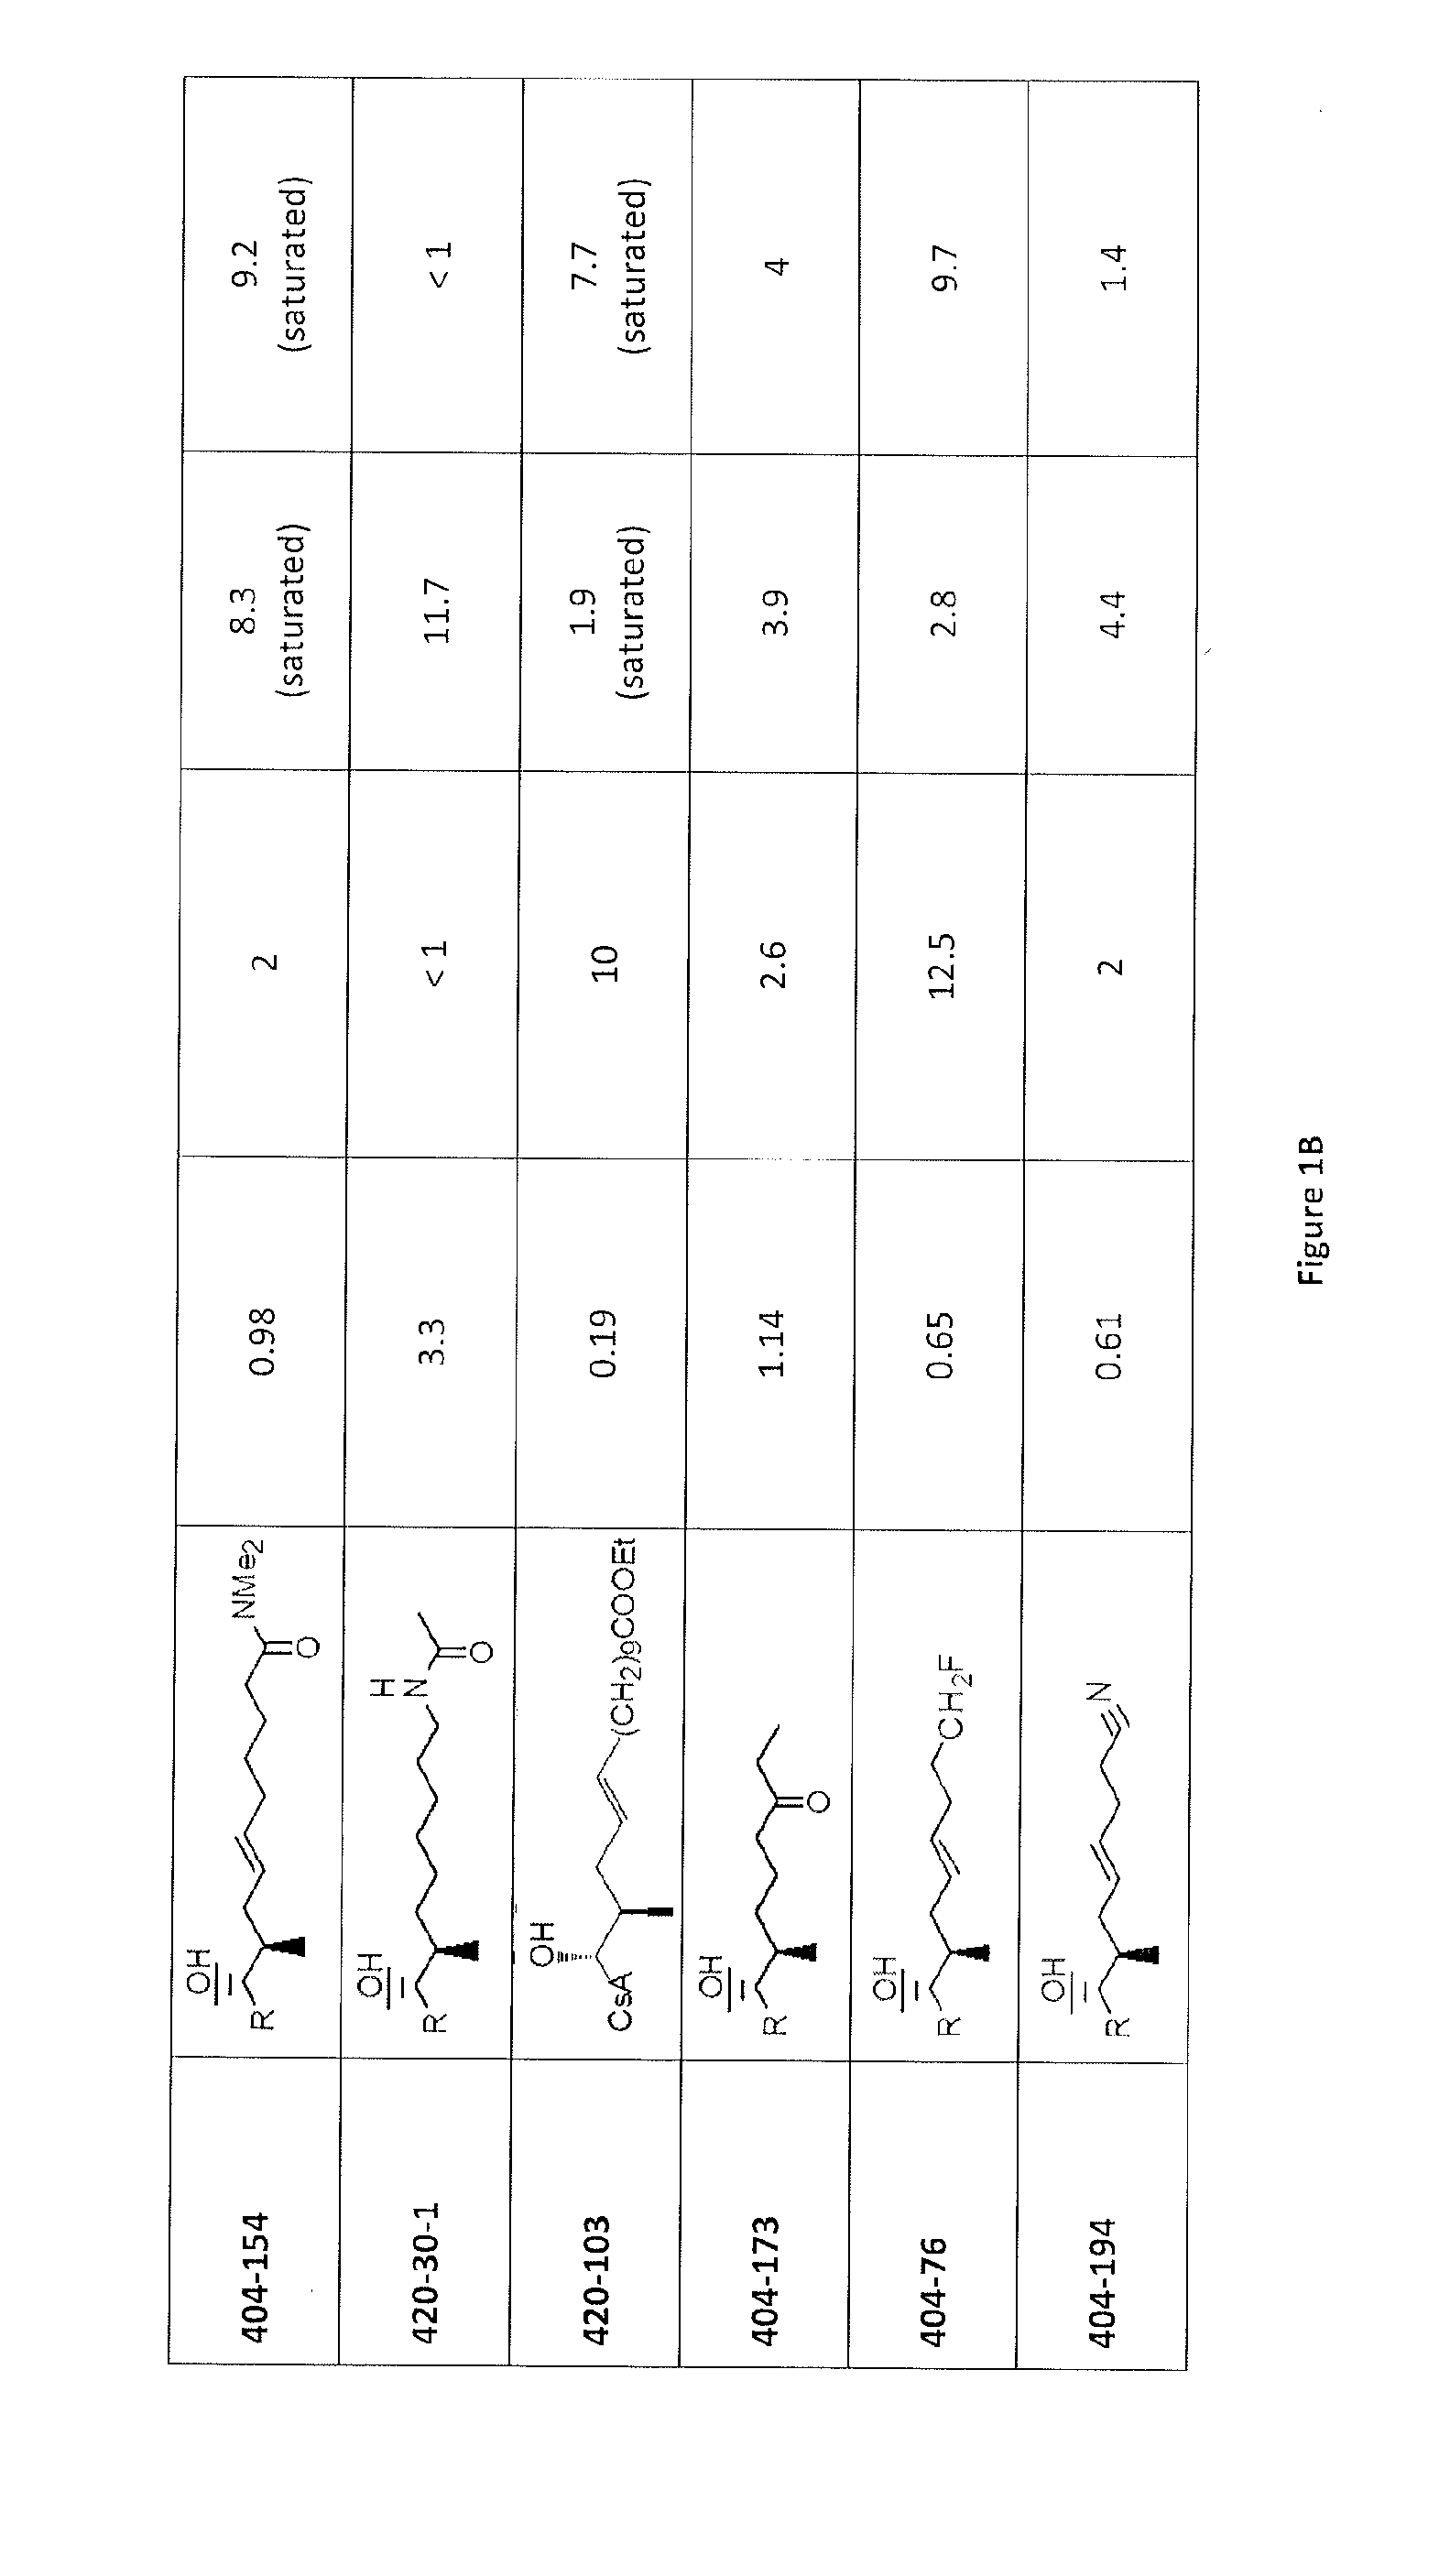 Cyclosporine analogue molecules modified at amino acid 1 and 3